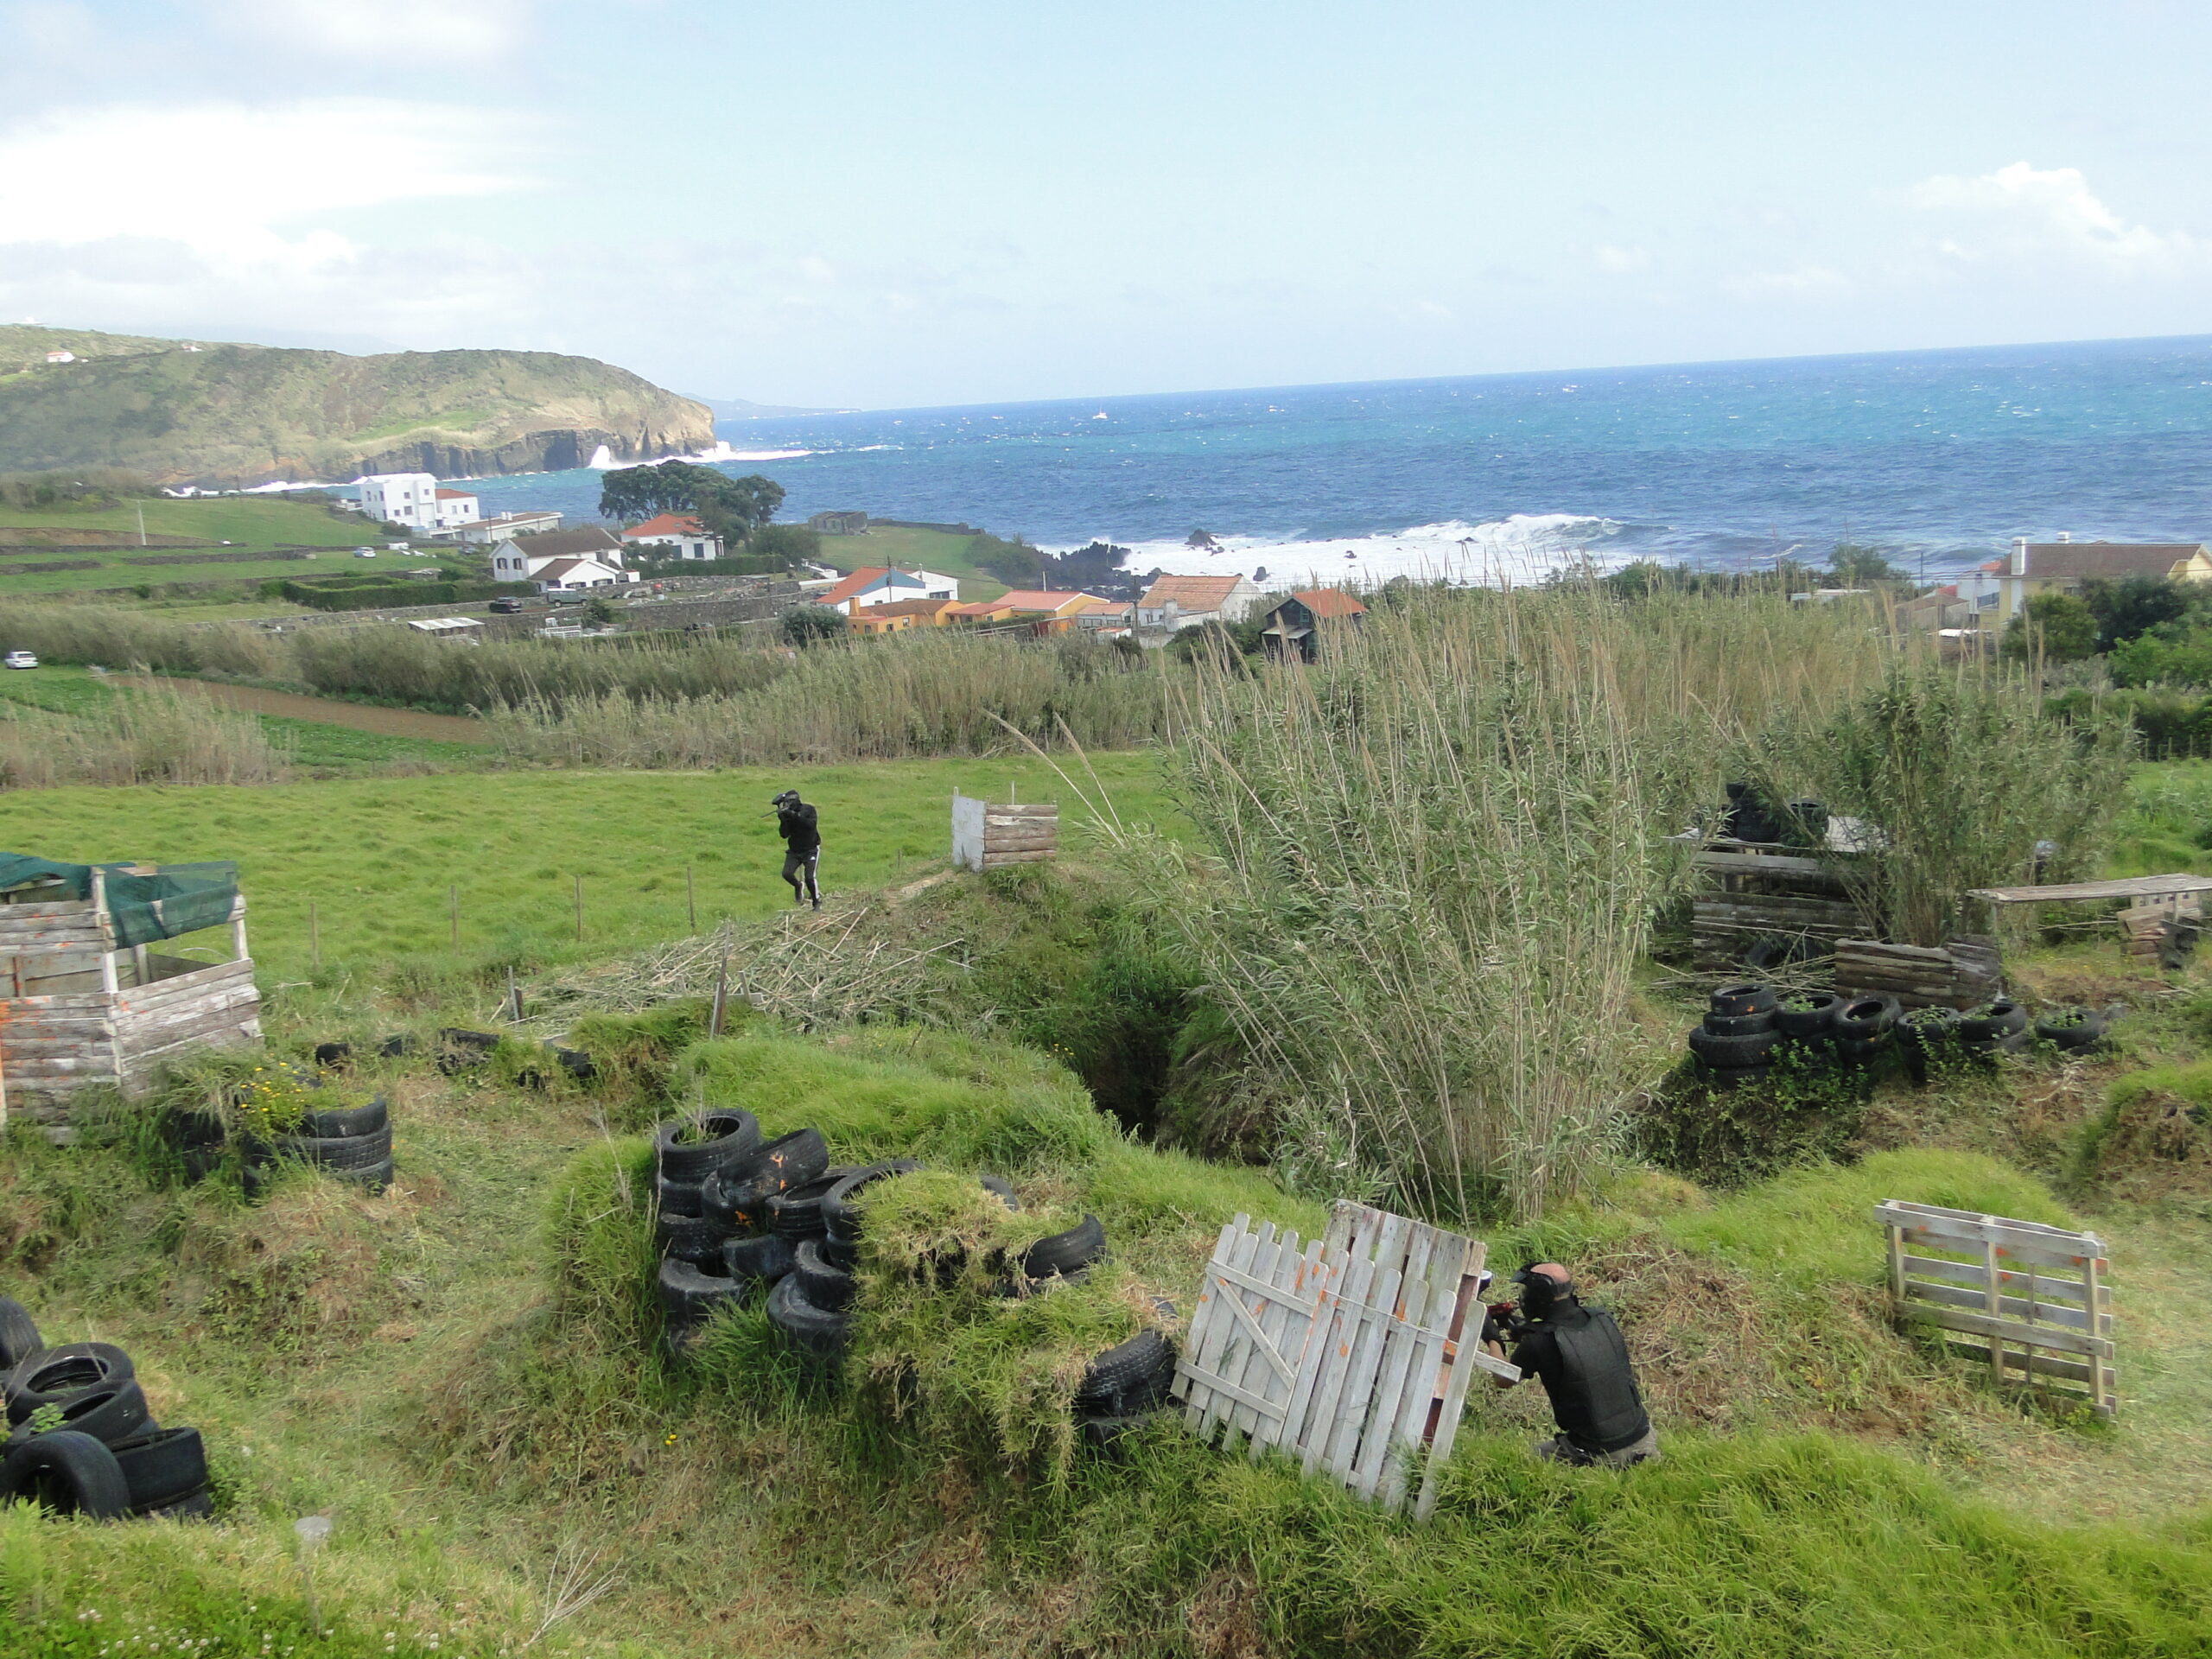 Jogo em campo de paintball no Faial - Açores